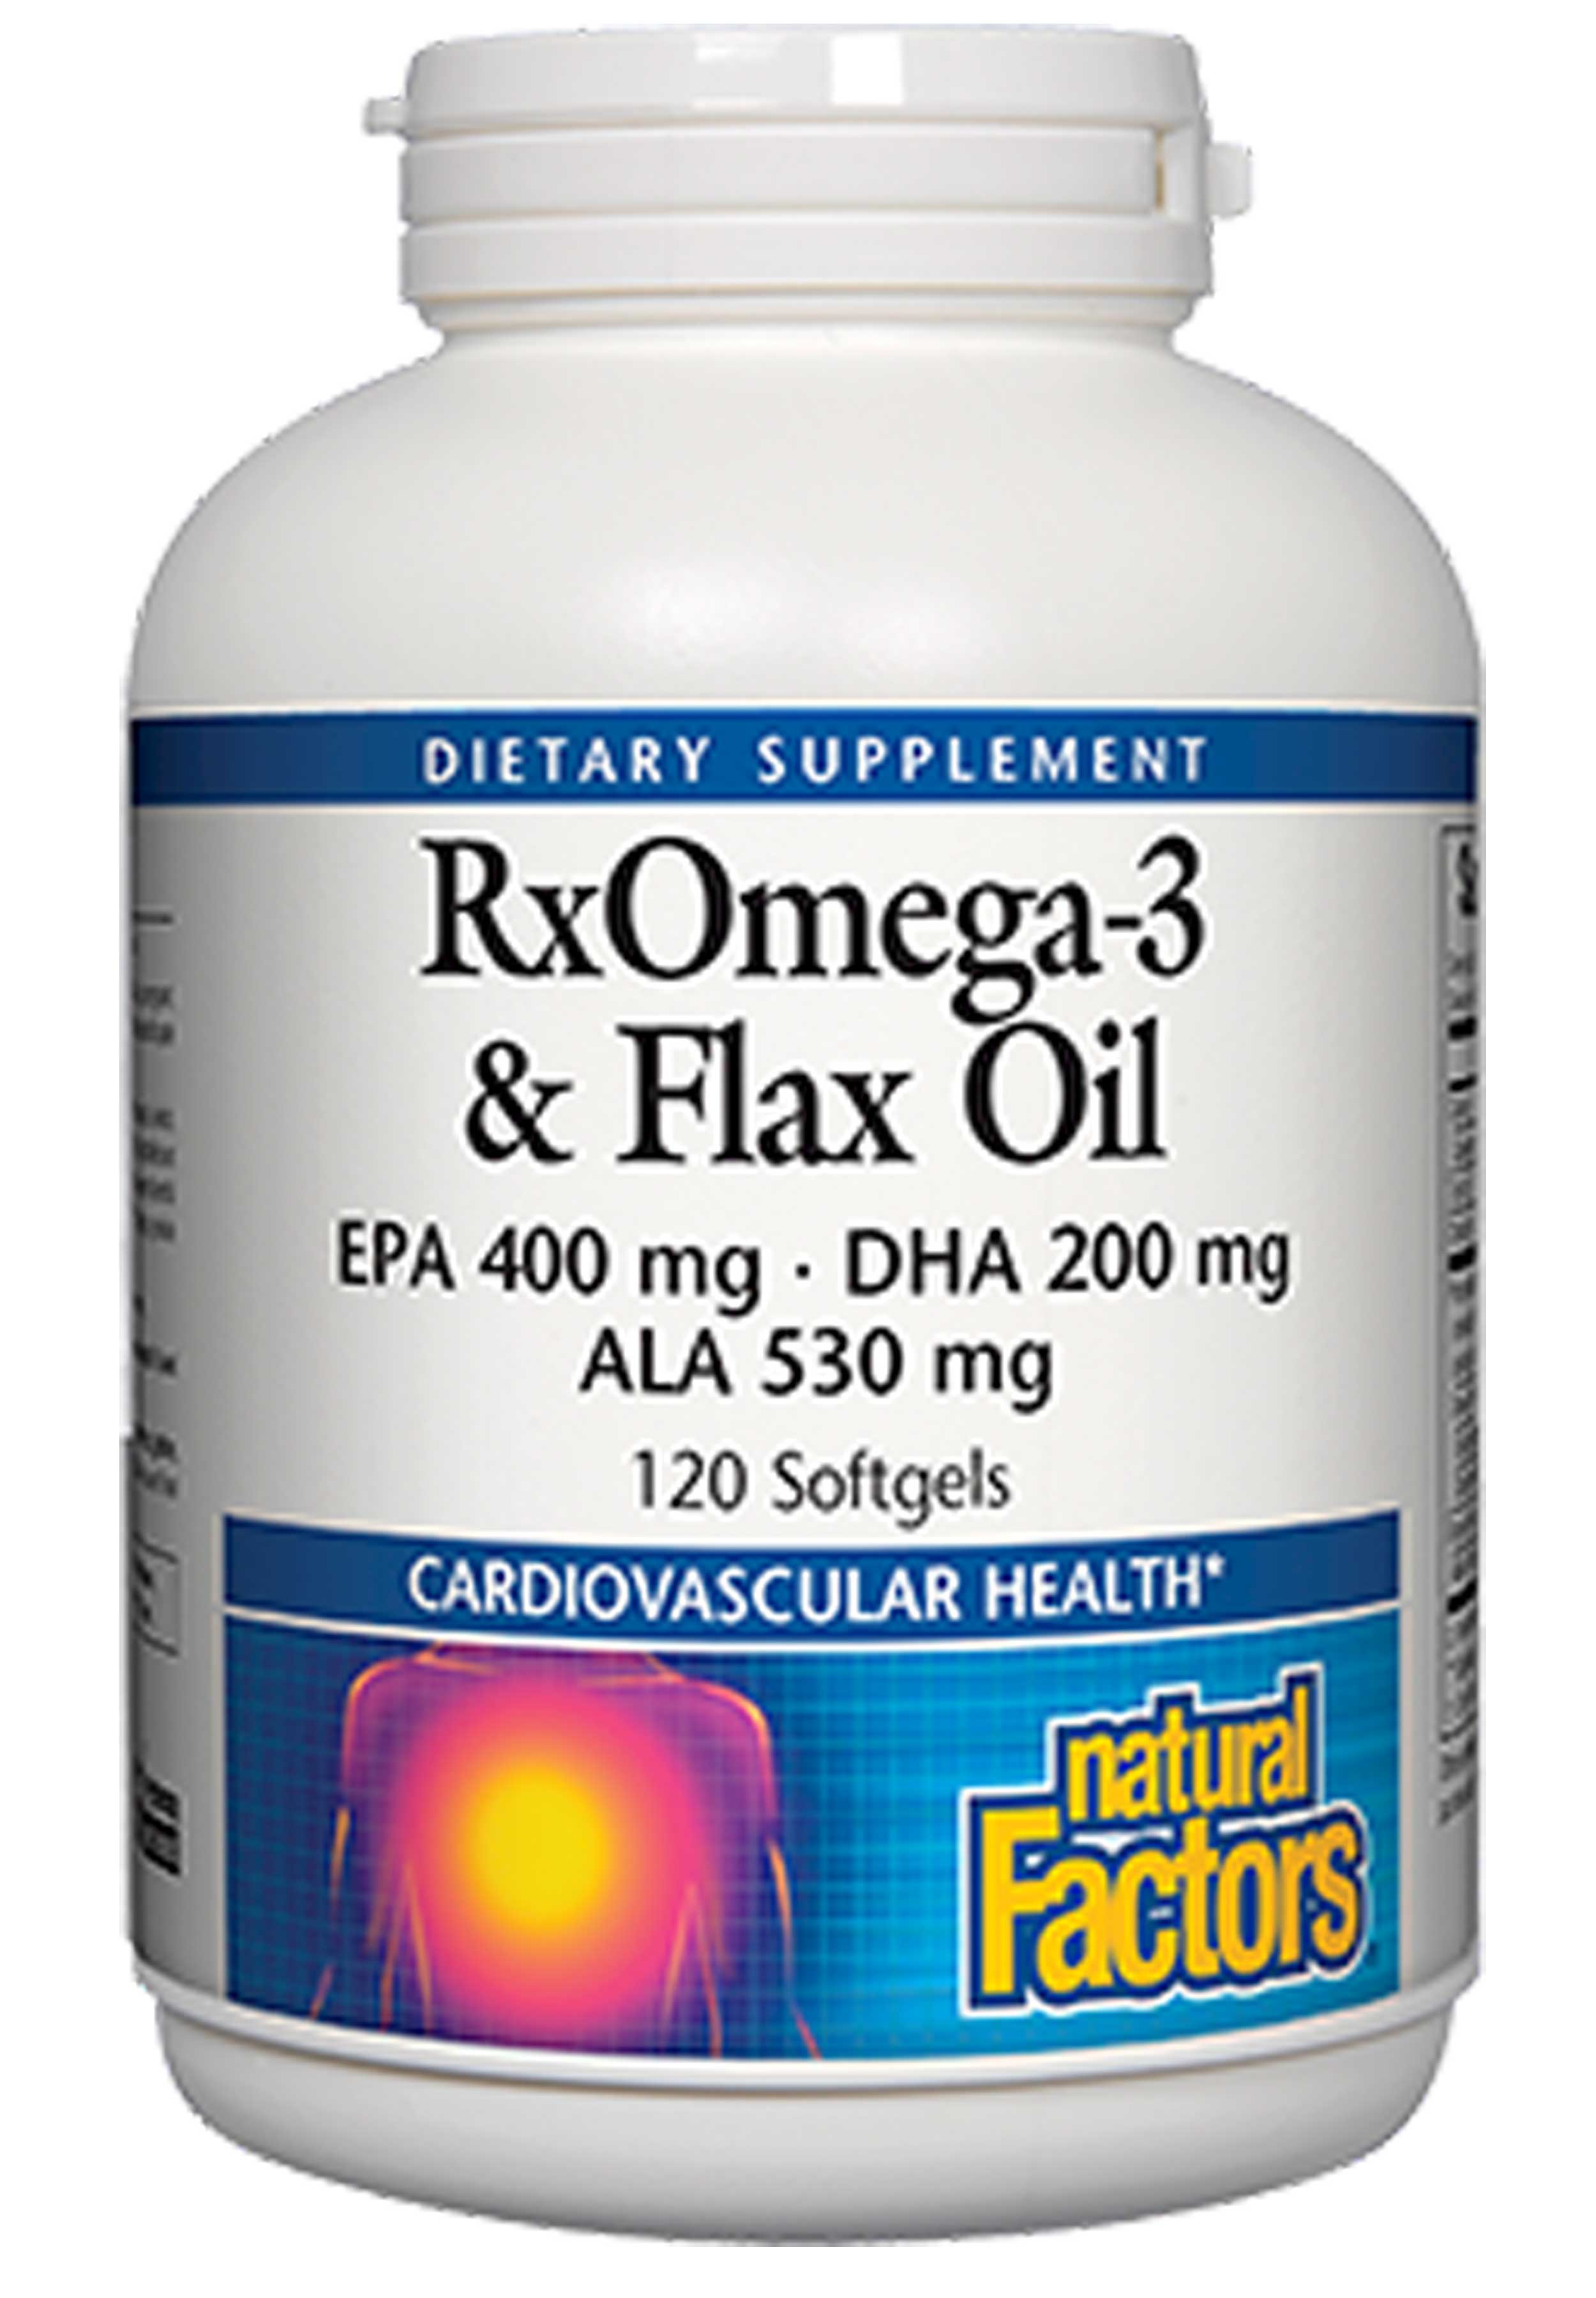 Natural Factors RxOmega-3 & Flax Oil